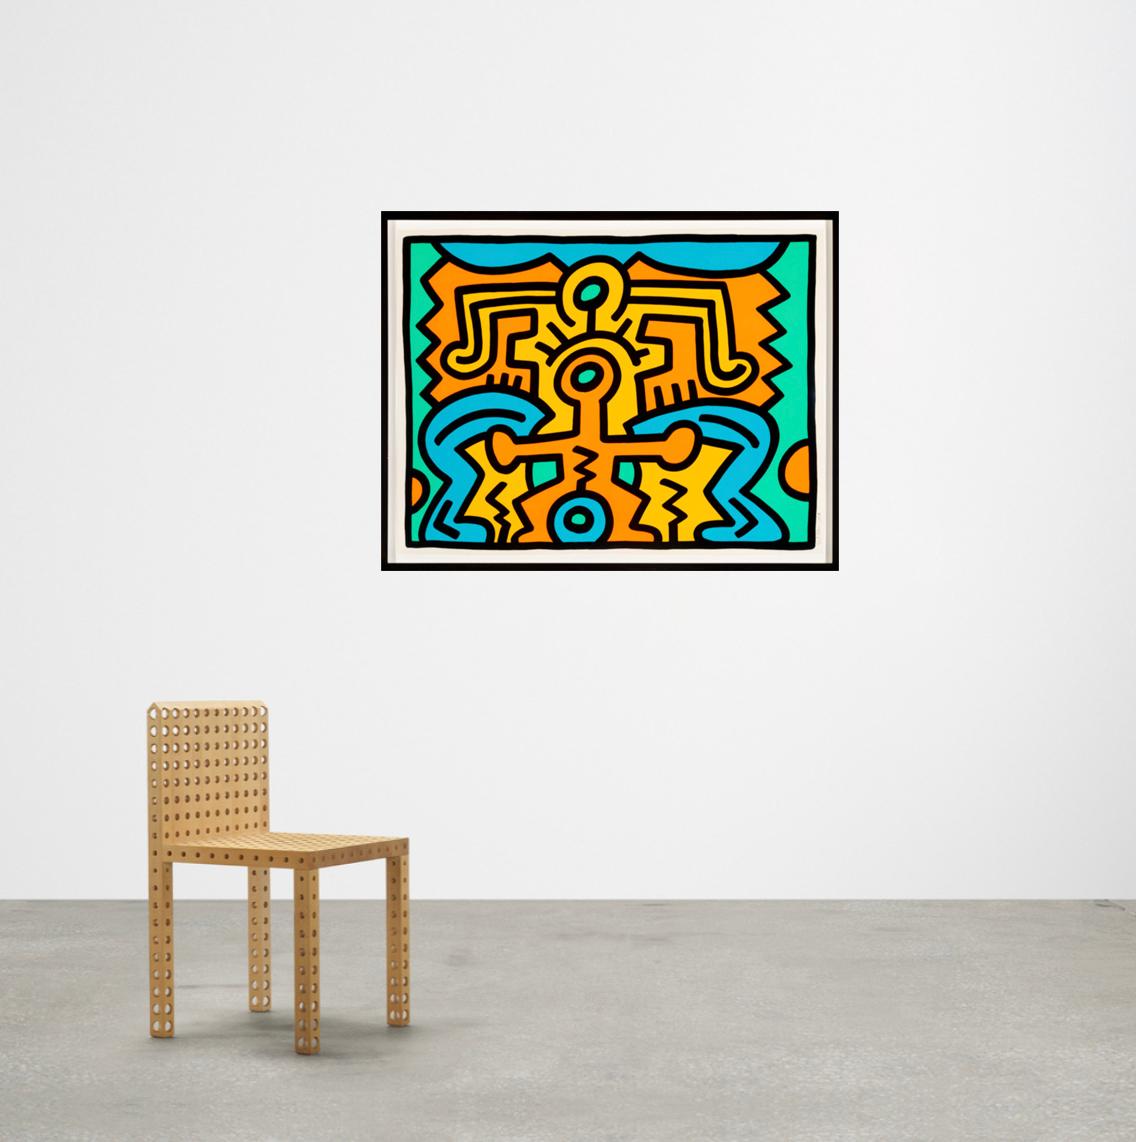 Artista: Keith Haring 
Título: Creciendo (Lámina 5), de la Cartera Creciendo
Tamaño:  40 x 30 Pulgadas (76,2 x 101,6 cm)
Técnica: Serigrafía en colores, sobre cartulina Lenox Museum, con márgenes completos.
Edición: 15 de 100
Año: 1988
Notas: